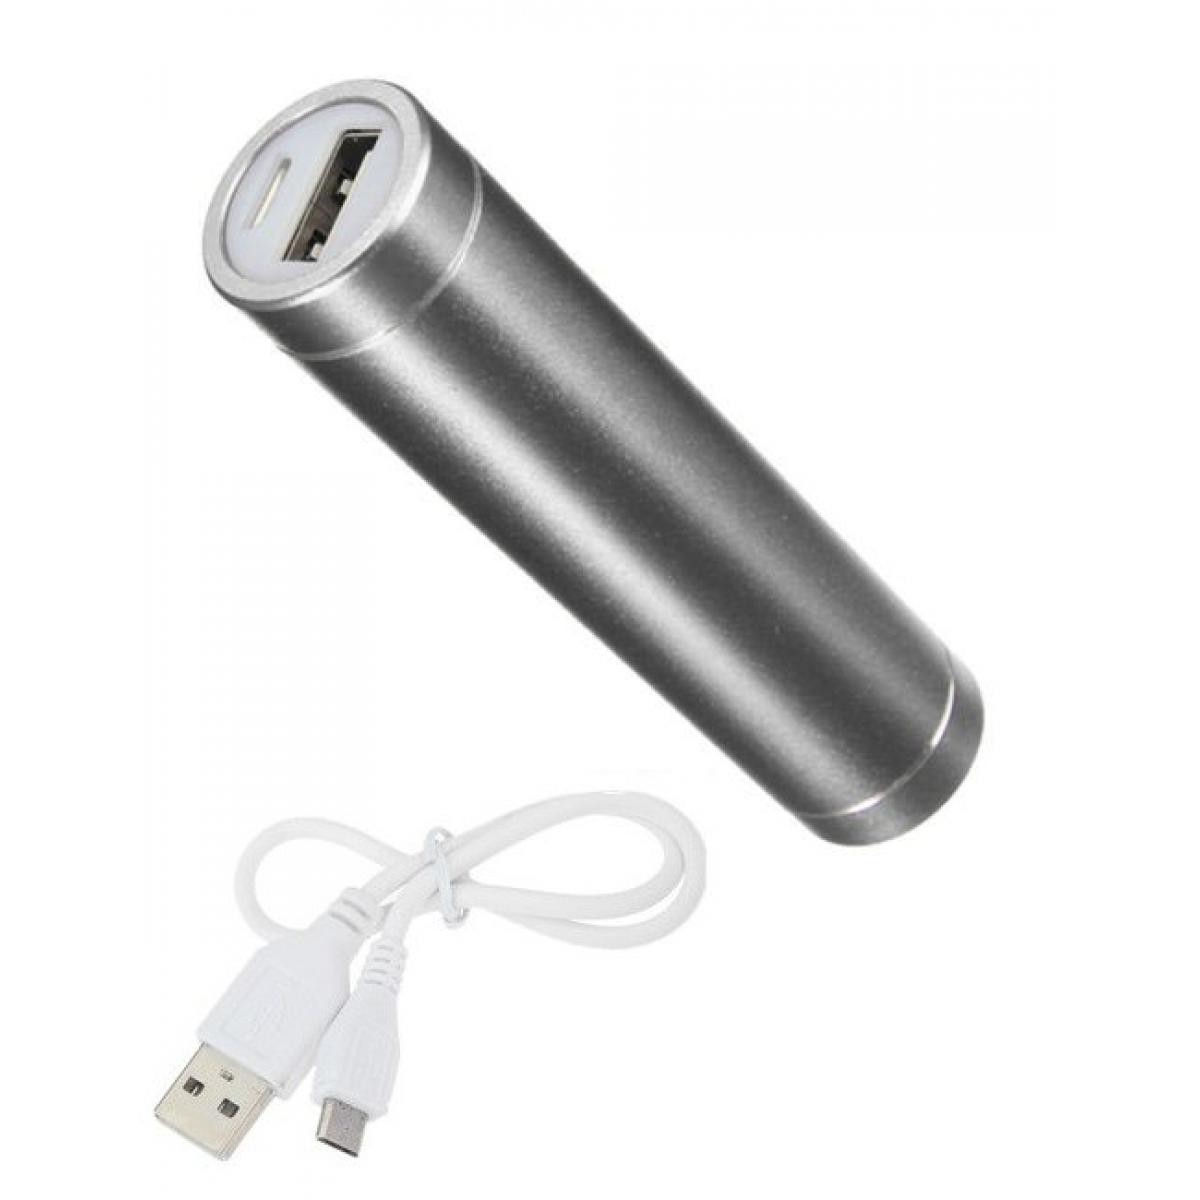 Shot - Batterie Chargeur Externe pour XIAOMI Mi 9 SE Power Bank 2600mAh avec Cable USB/Mirco USB Secours Telephone (ARGENT) - Chargeur secteur téléphone